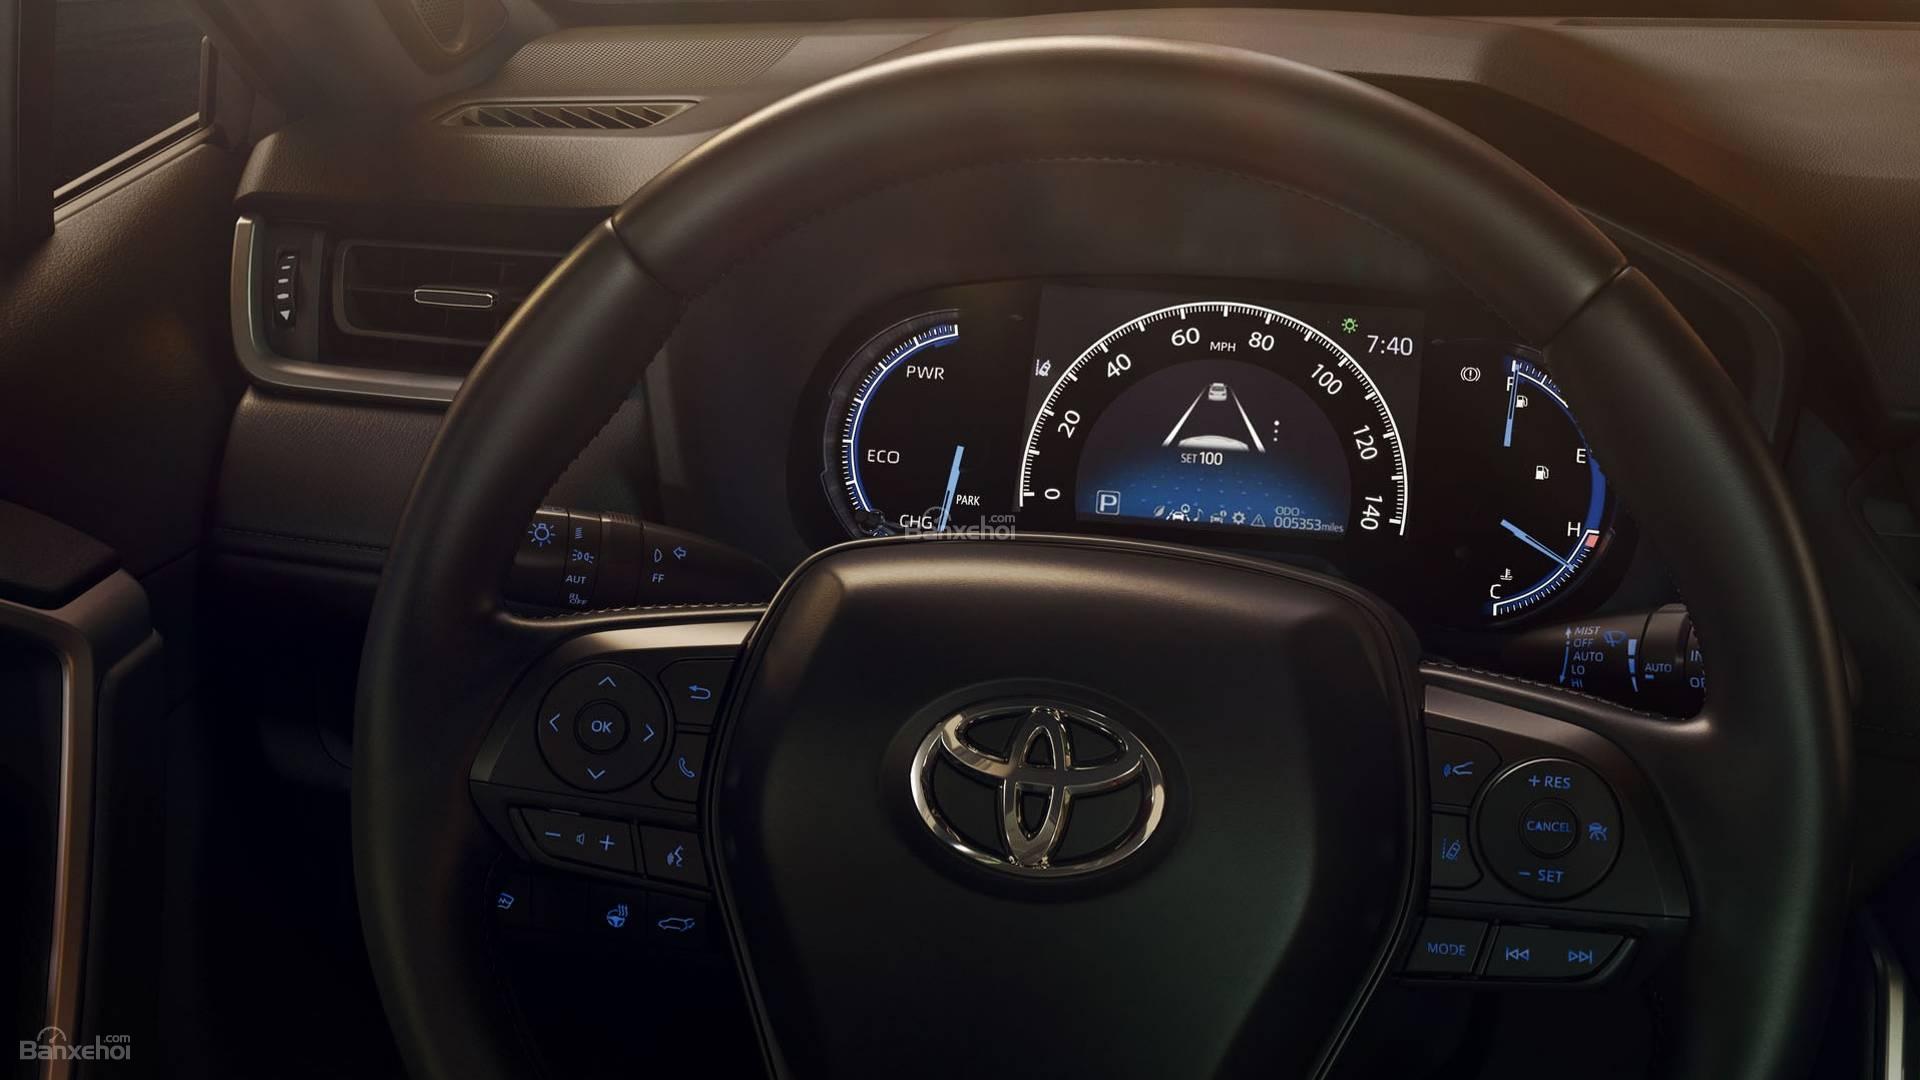 Đánh giá xe Toyota RAV4 2019 về trang bị tiện nghi: đồng hồ lái sắc nét 2